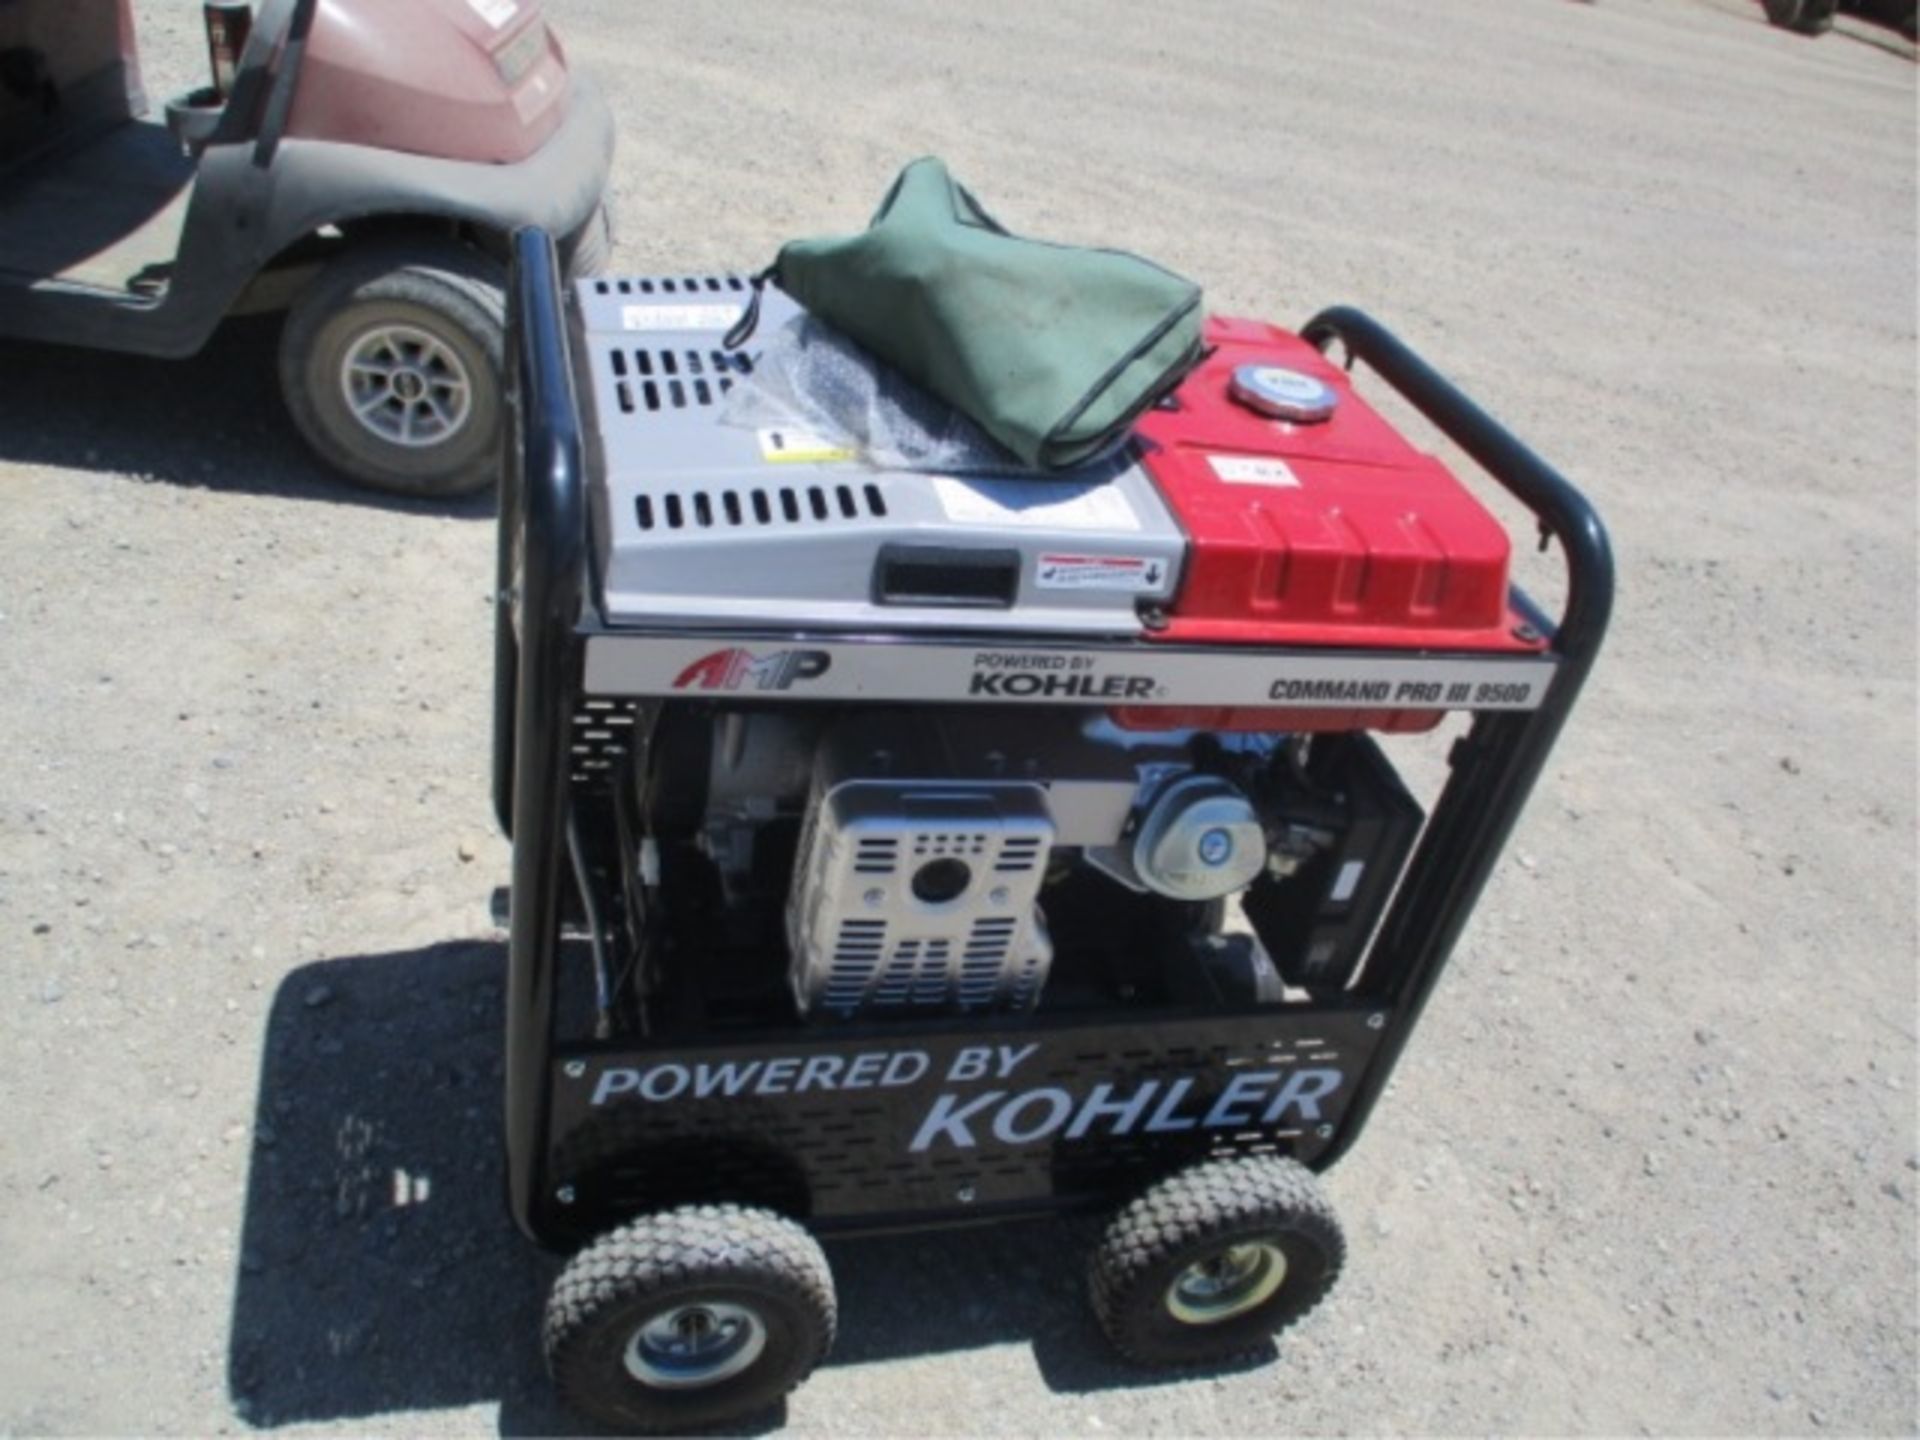 Kohler Command Pro III 9500 Generator Compressor, Welder, Gas Powered, S/N: 4919803918 - Image 5 of 28